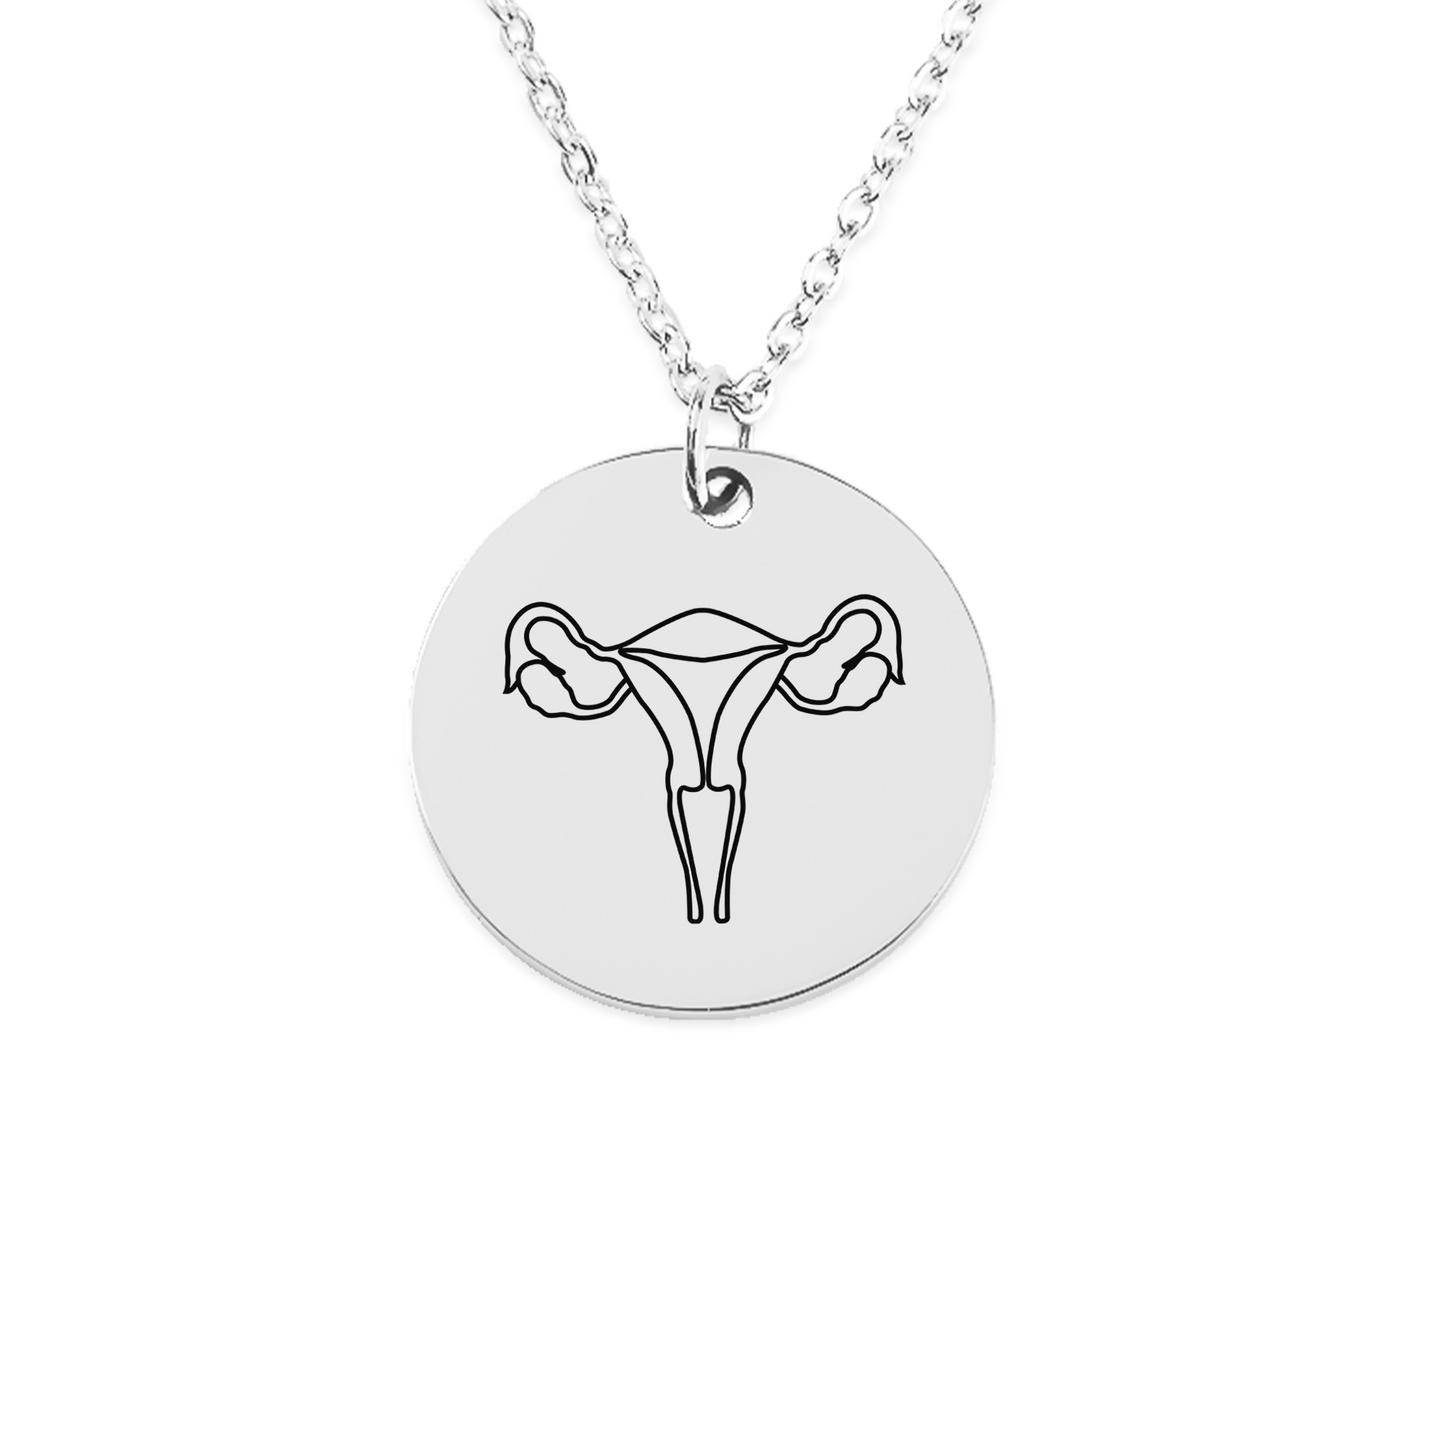 Uterus Feminist Coin Necklace